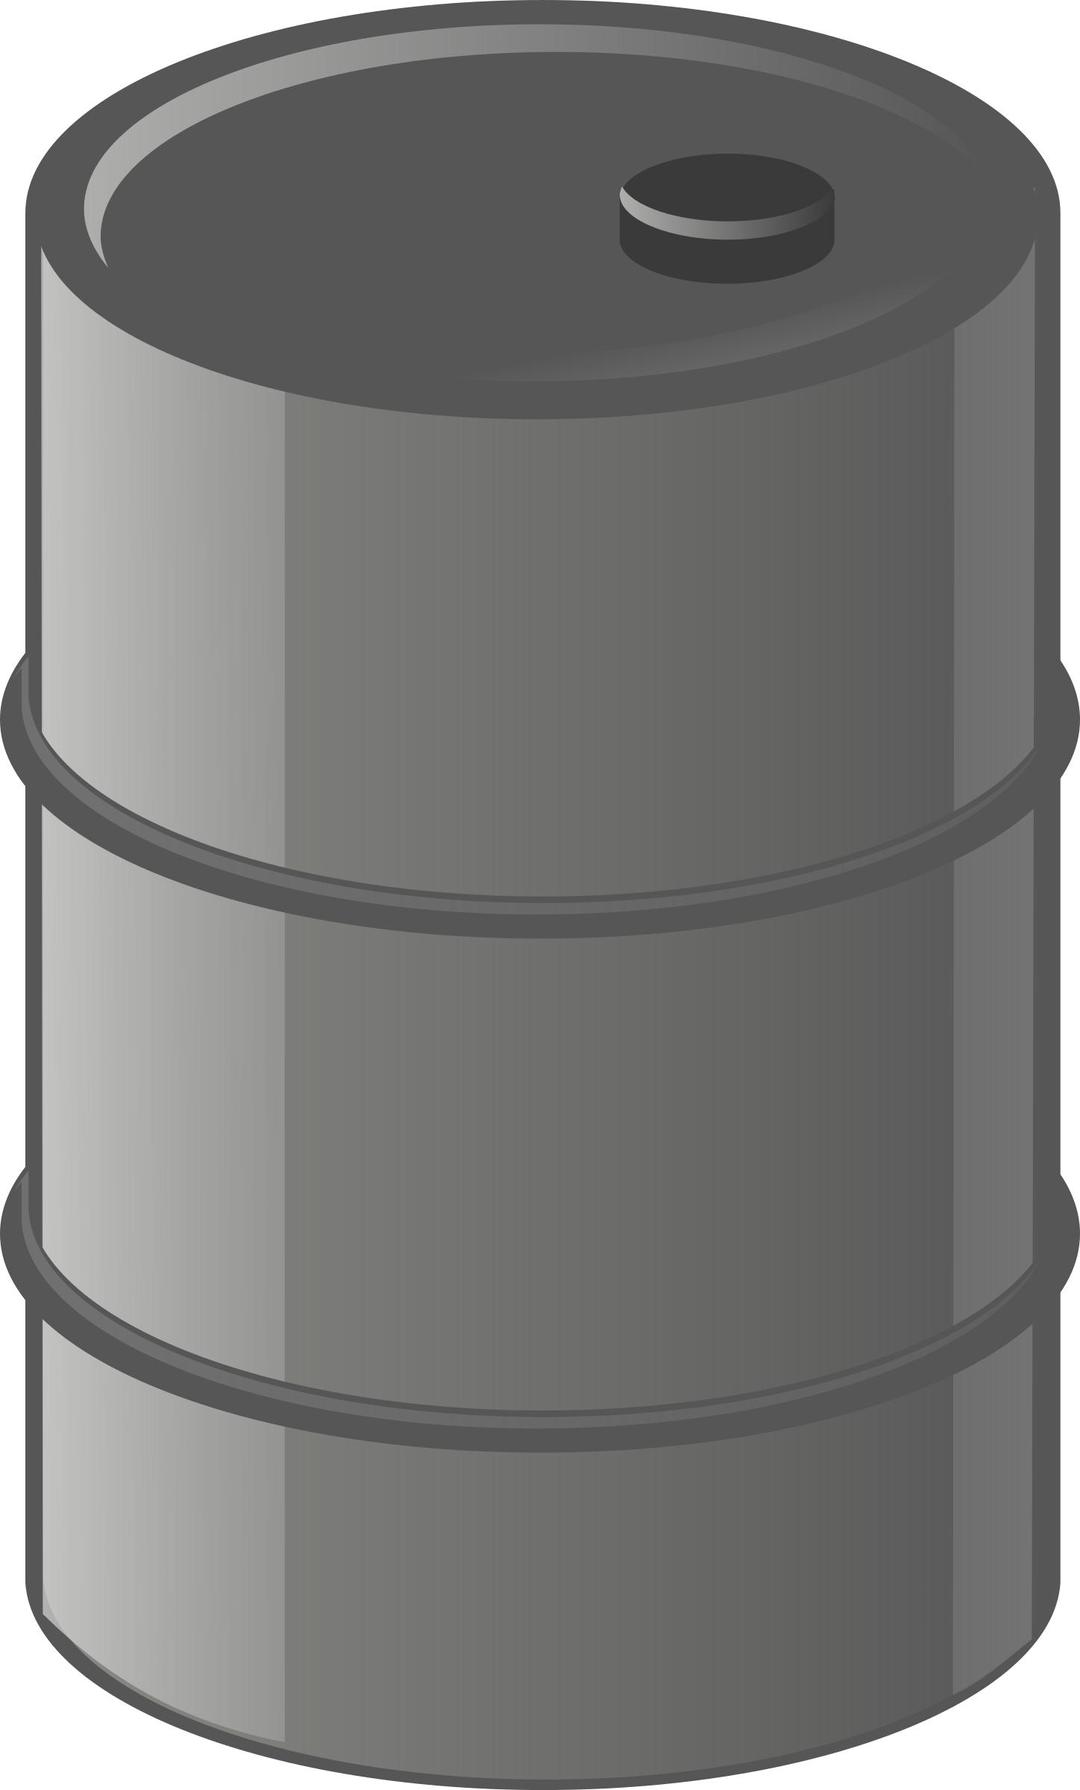 metal barrel png transparent